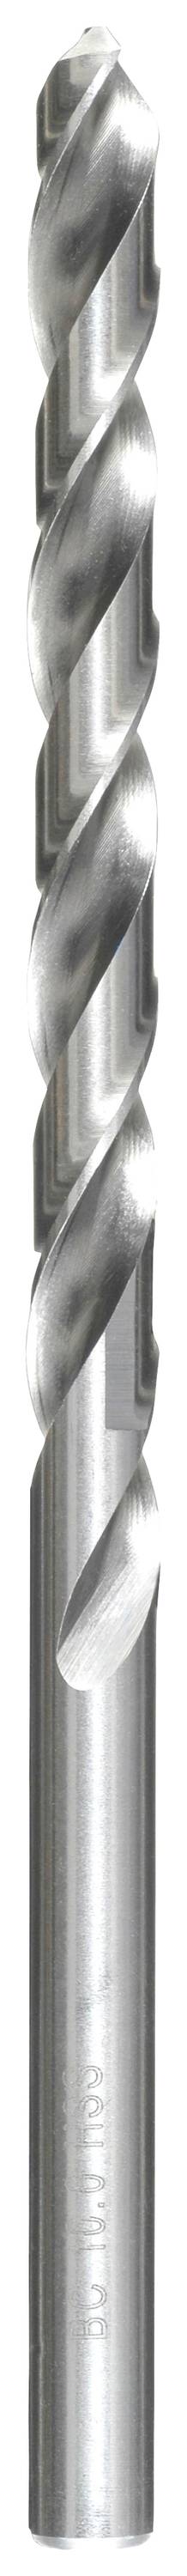 KWB 217030 HSS Spiralbohrer 1 Stück 3 mm Gesamtlänge 100 mm DIN 340 Zahnkranzbohrfutter 1 St.